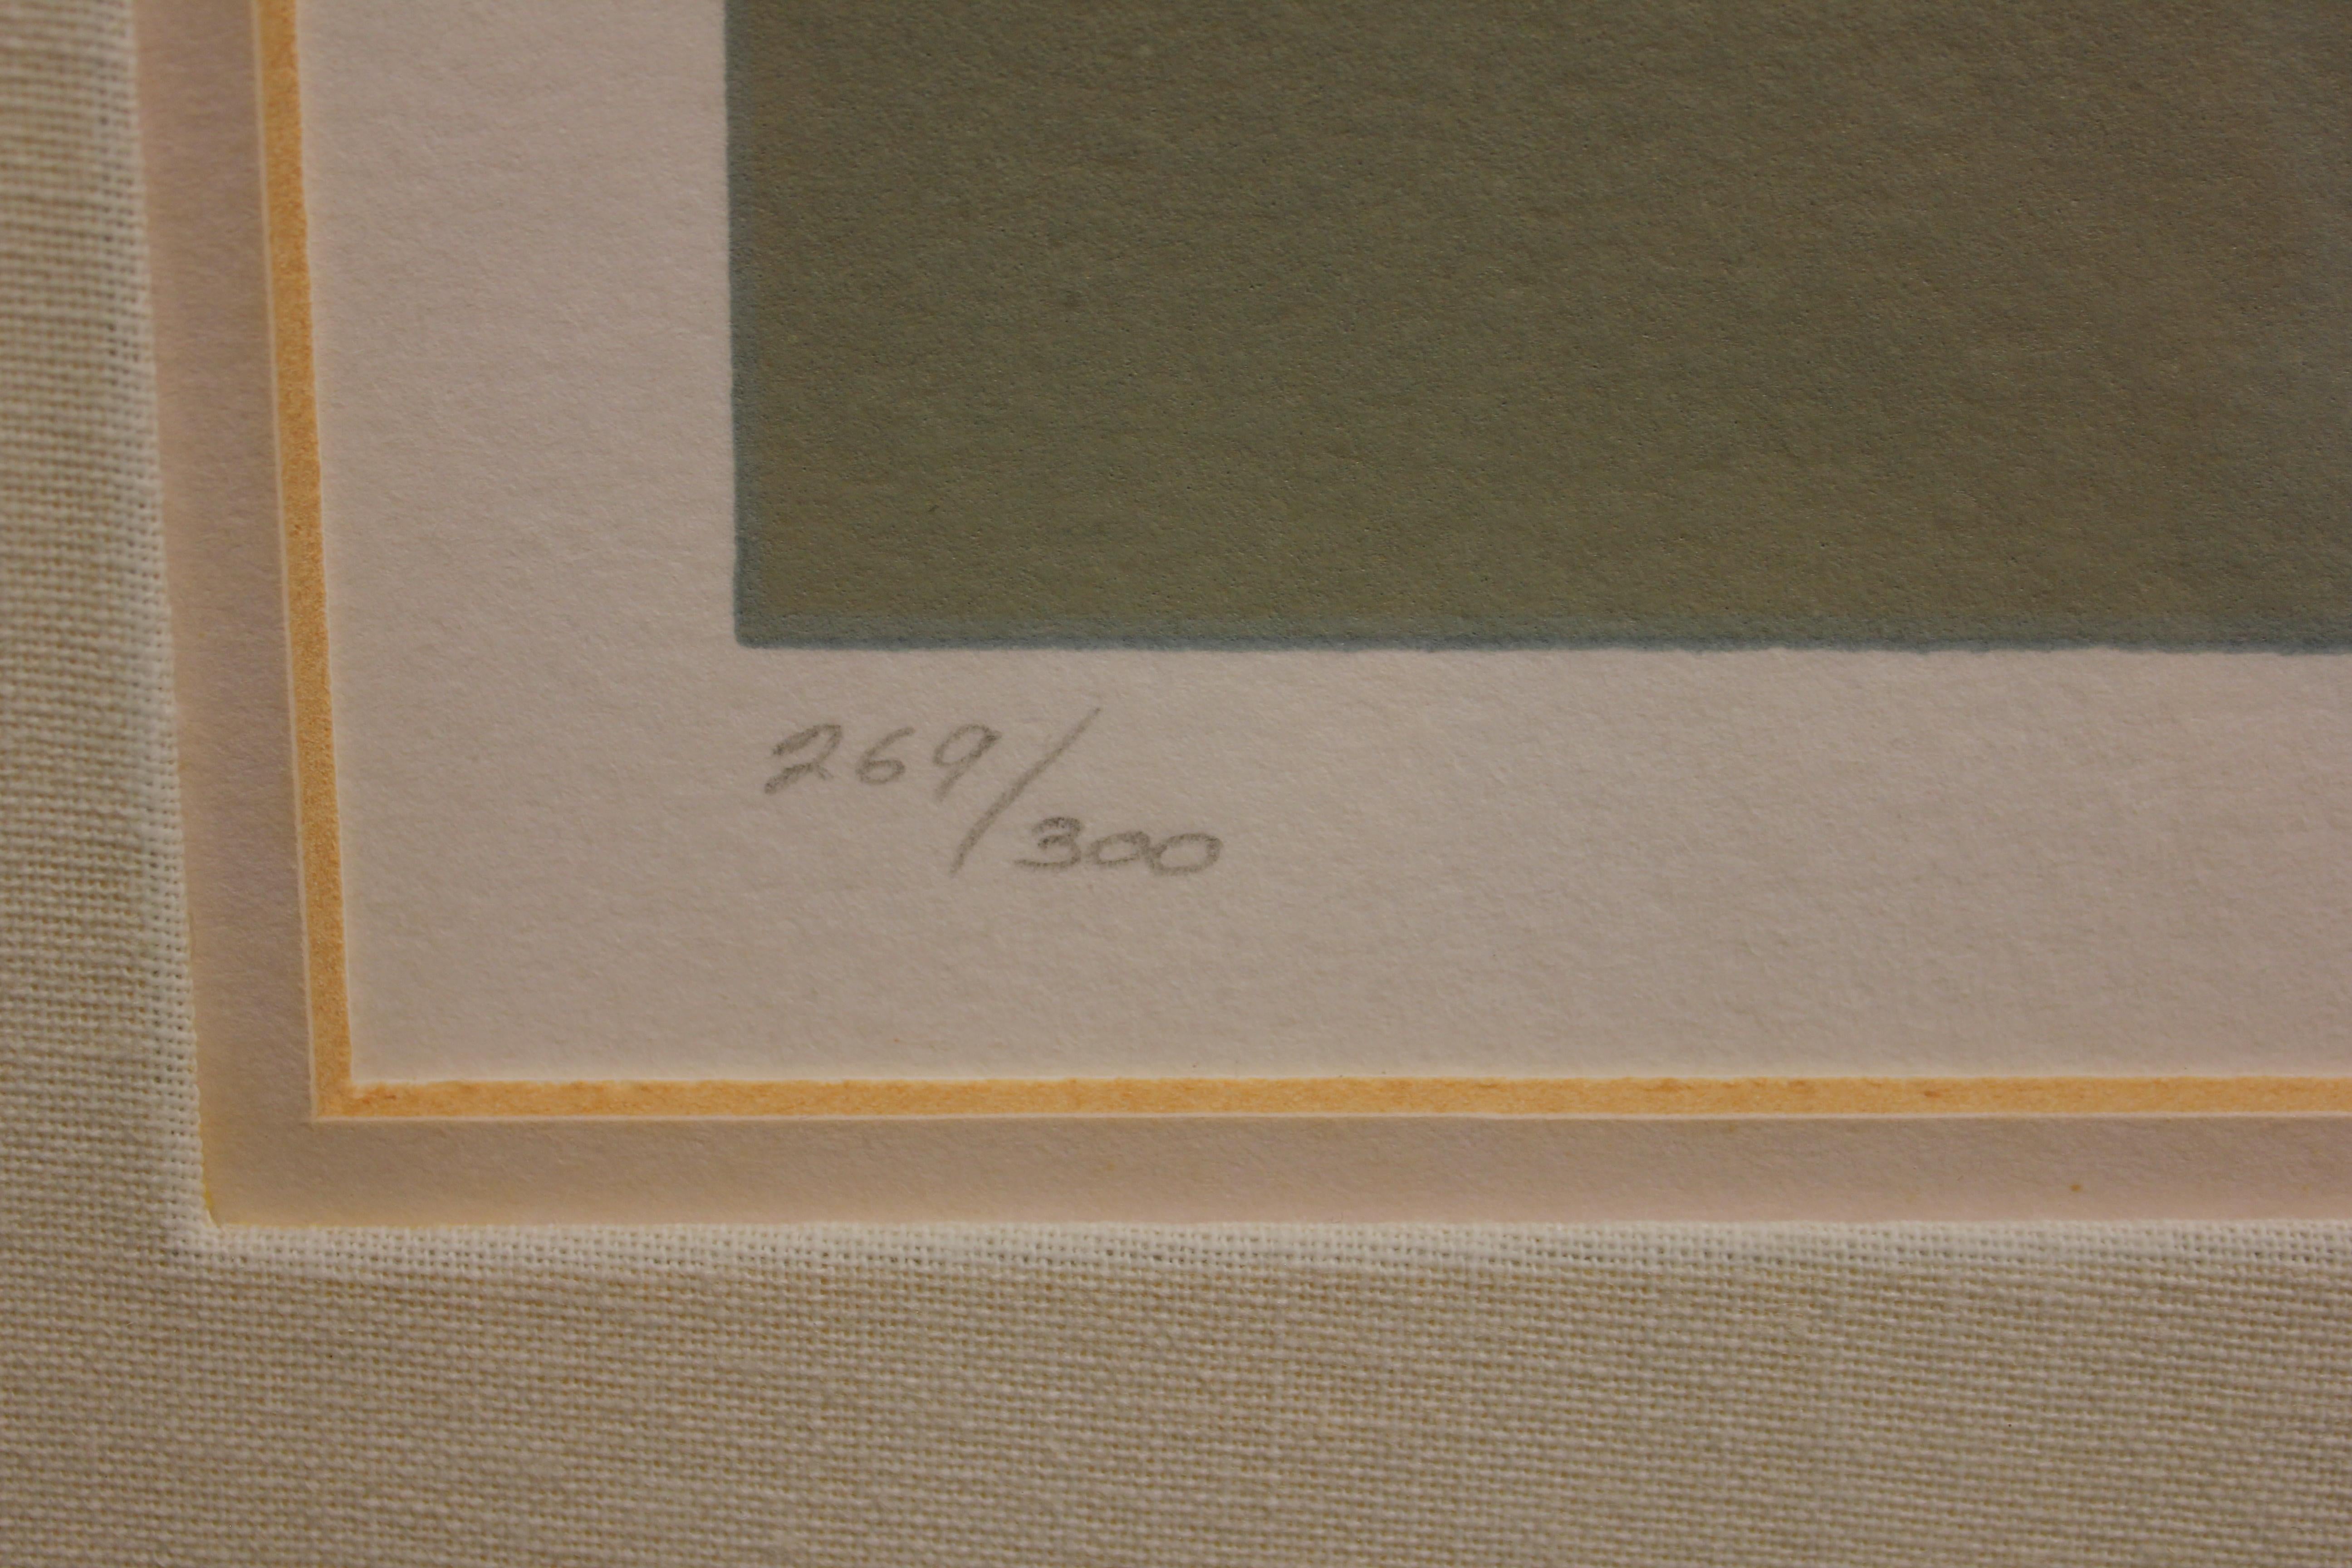 Abstrakt-expressionistische kühn getönte Lithographie, Auflage 269 von 300 (Abstrakter Expressionismus), Print, von Unknown